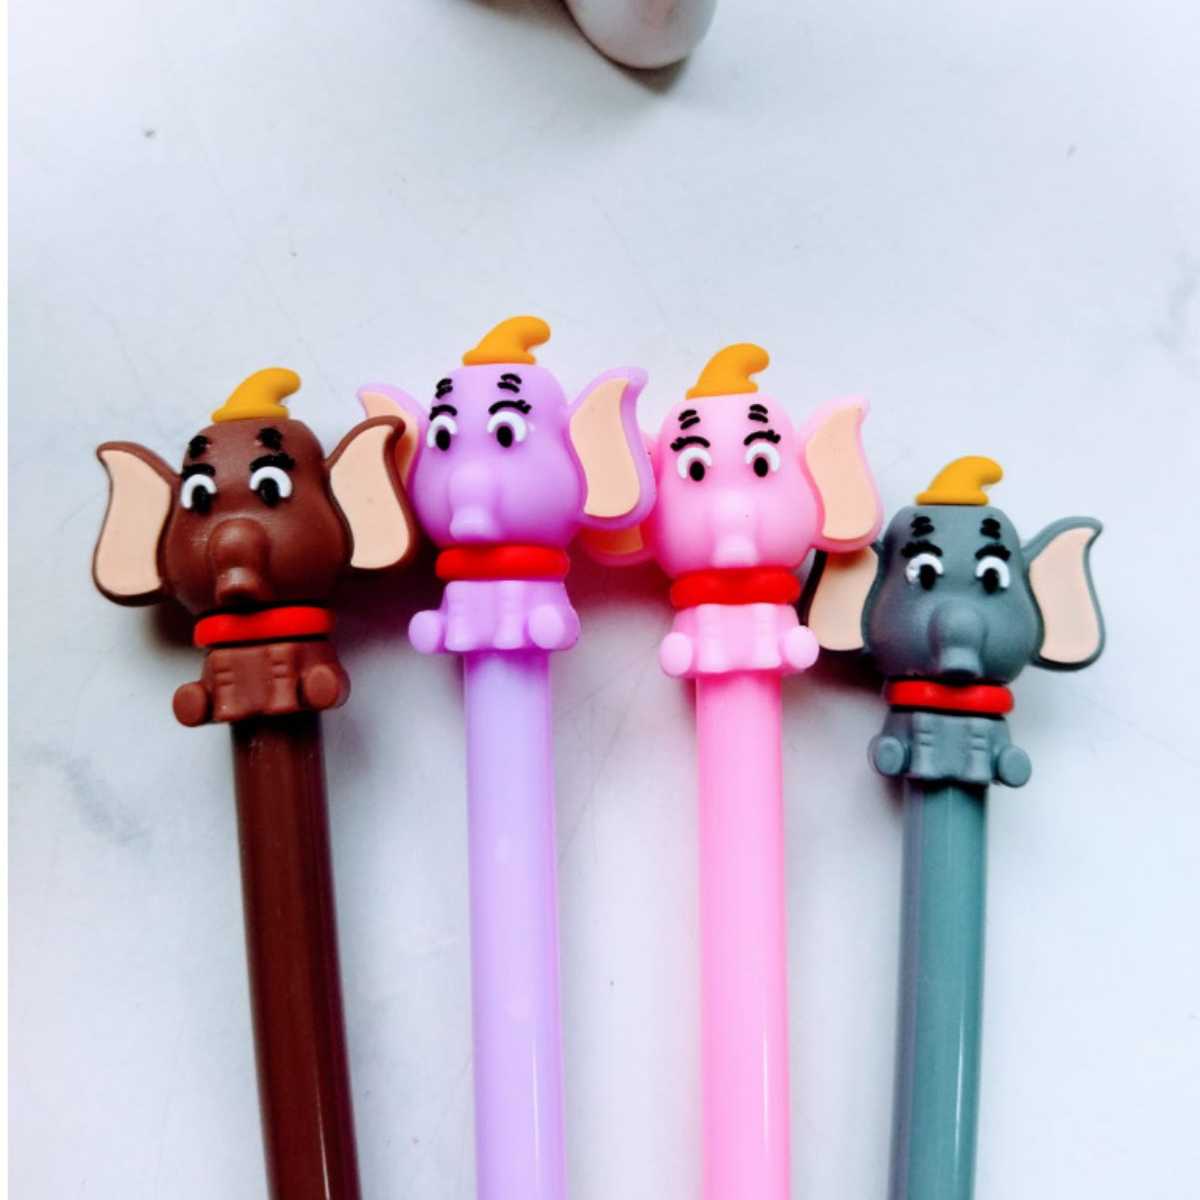 Caneta Dumbo- Um clássico da Disney agora em forma de caneta!